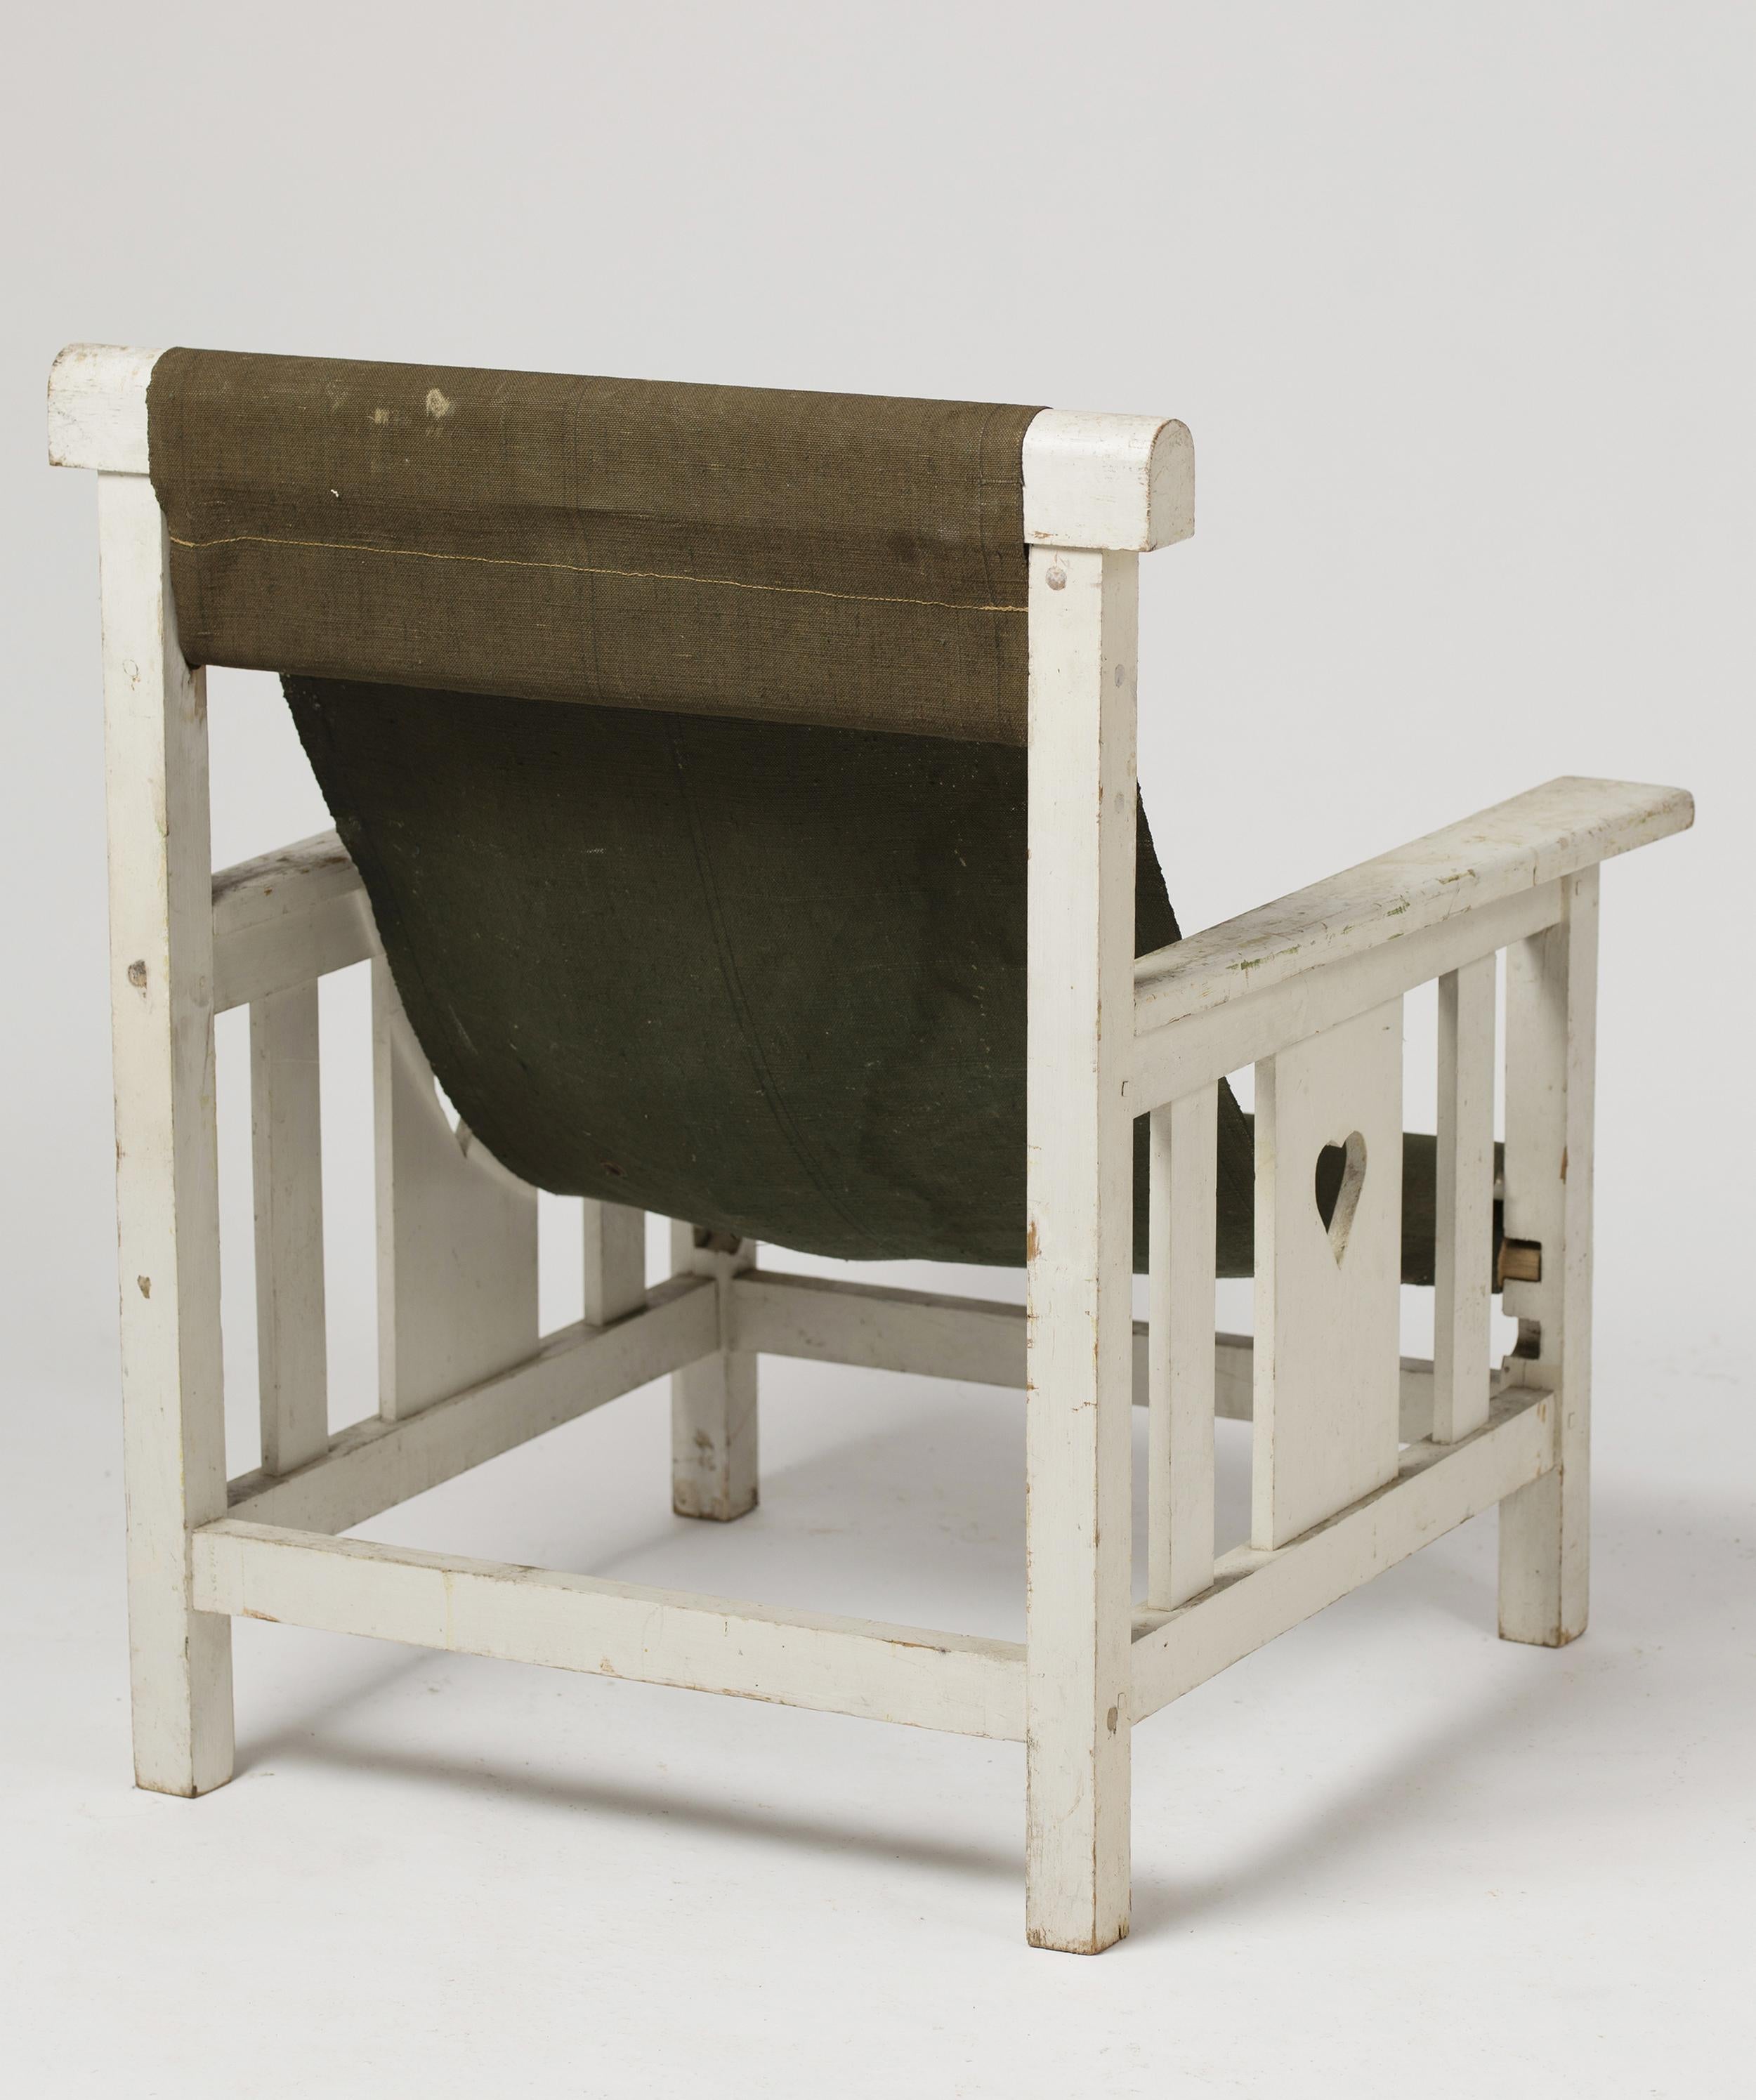 Sessel Transat aus lackiertem Holz und aufgespanntem Segeltuch, mit herzförmigen Aussparungen an den Seiten der Armlehnen.
Die Höhe und Tiefe des Sitzes sind in zwei Positionen einstellbar.
Gesamthöhe: 74 cm (29,1 Zoll)
Gesamtbreite: 74 cm (29,1